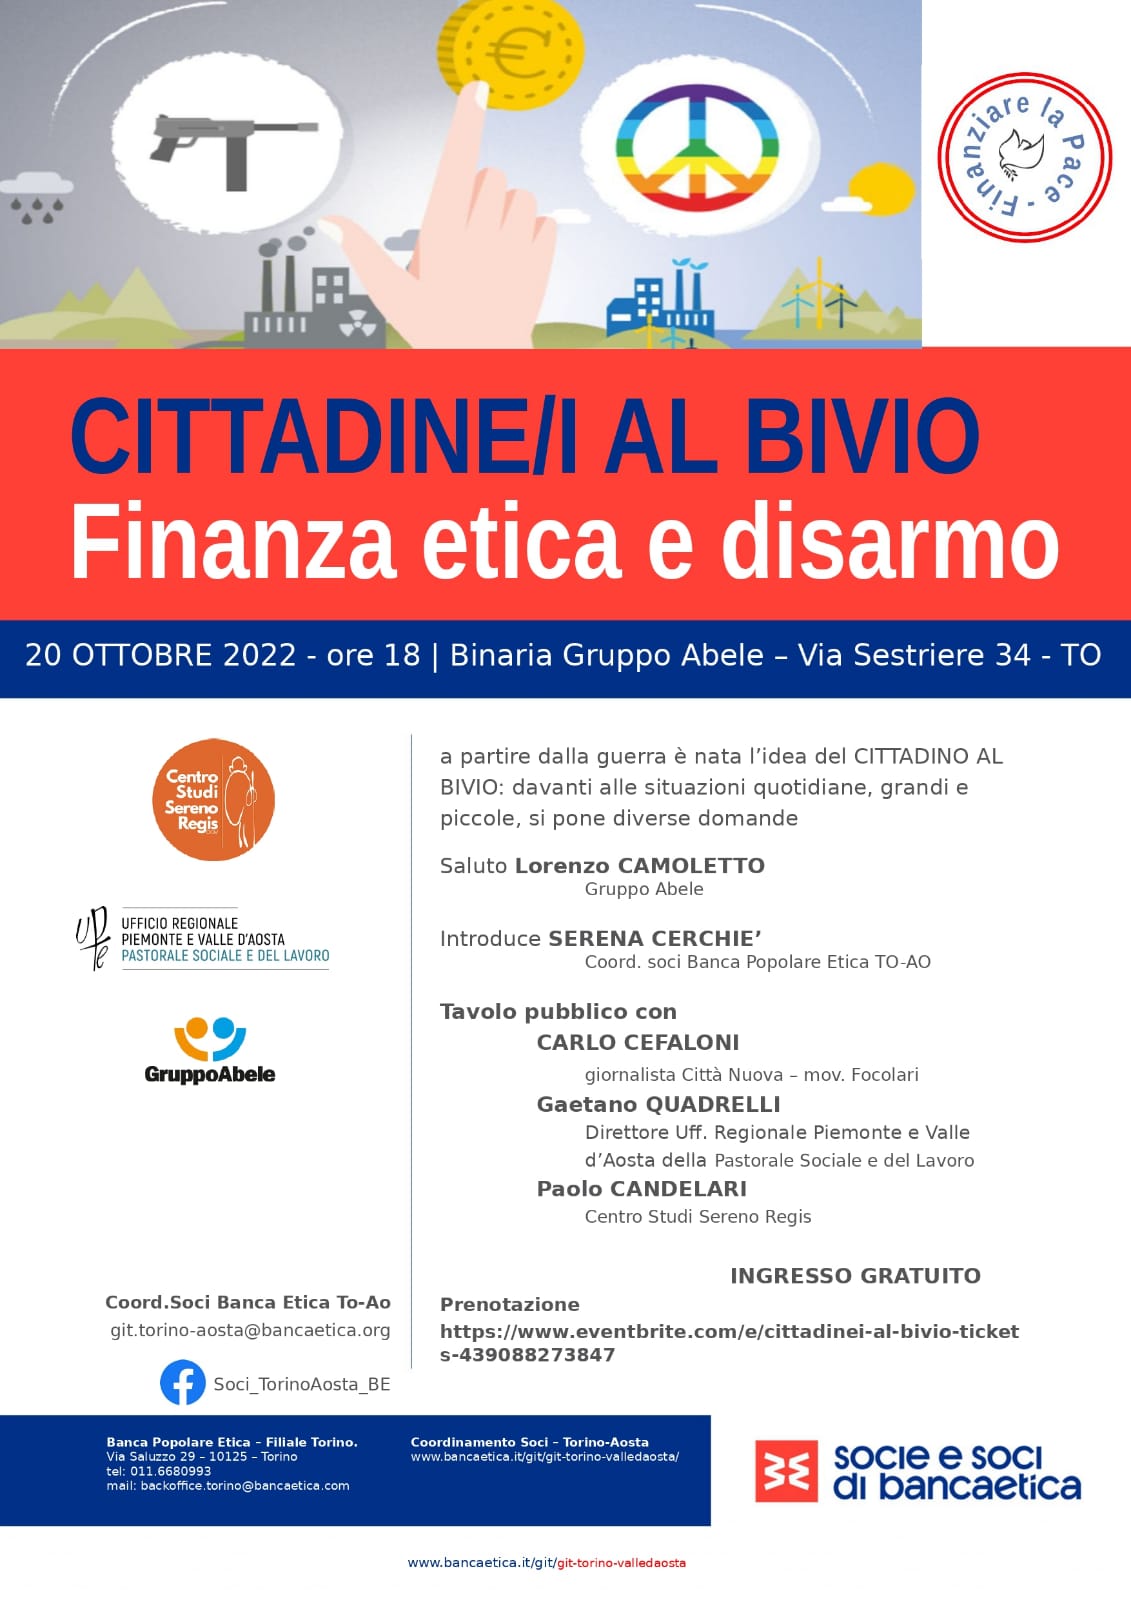 Cittadine/i al bivio: finanza etica e disarmo. Torino 20 ottobre